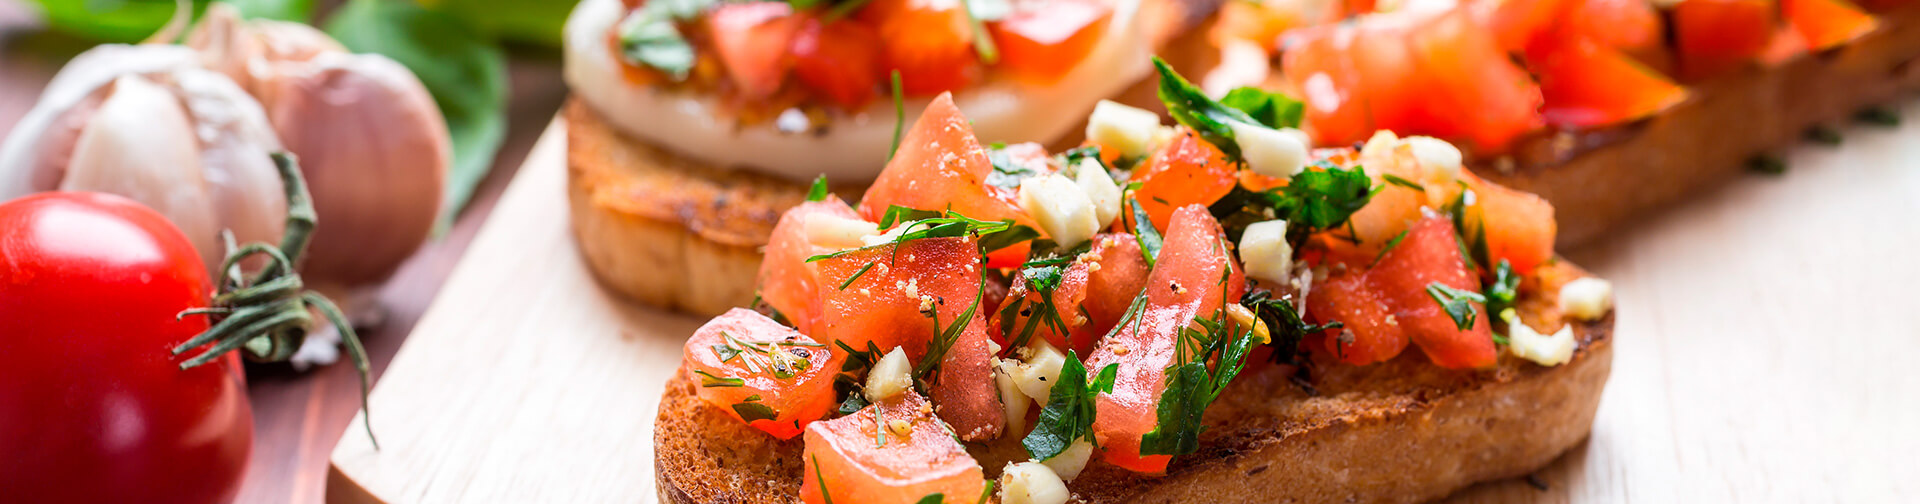 Pão com tomate e azeite. Dieta Mediterrânea